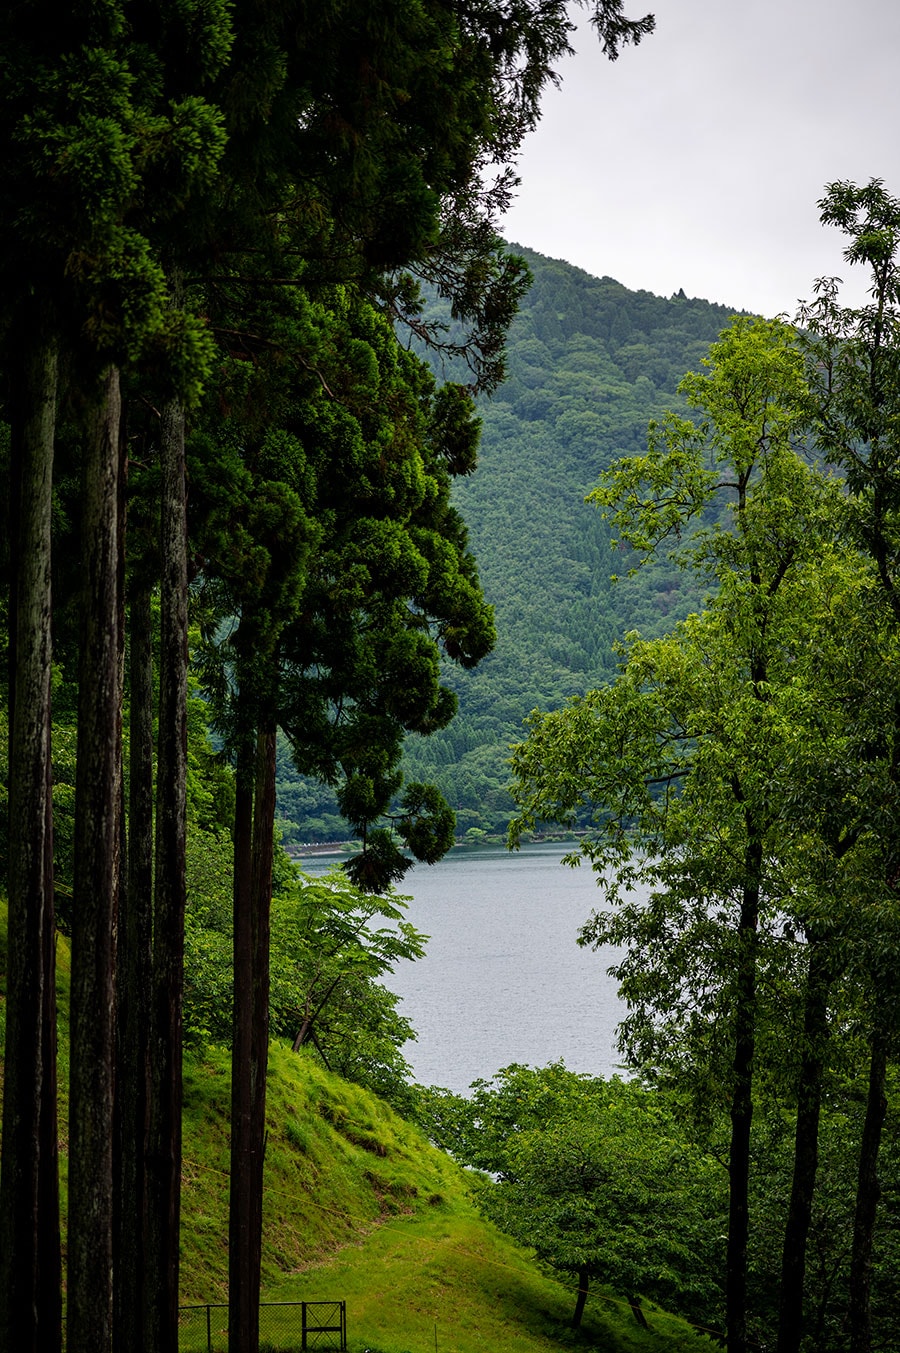 琵琶湖国定公園内に位置し、敷地面積は約4万坪。